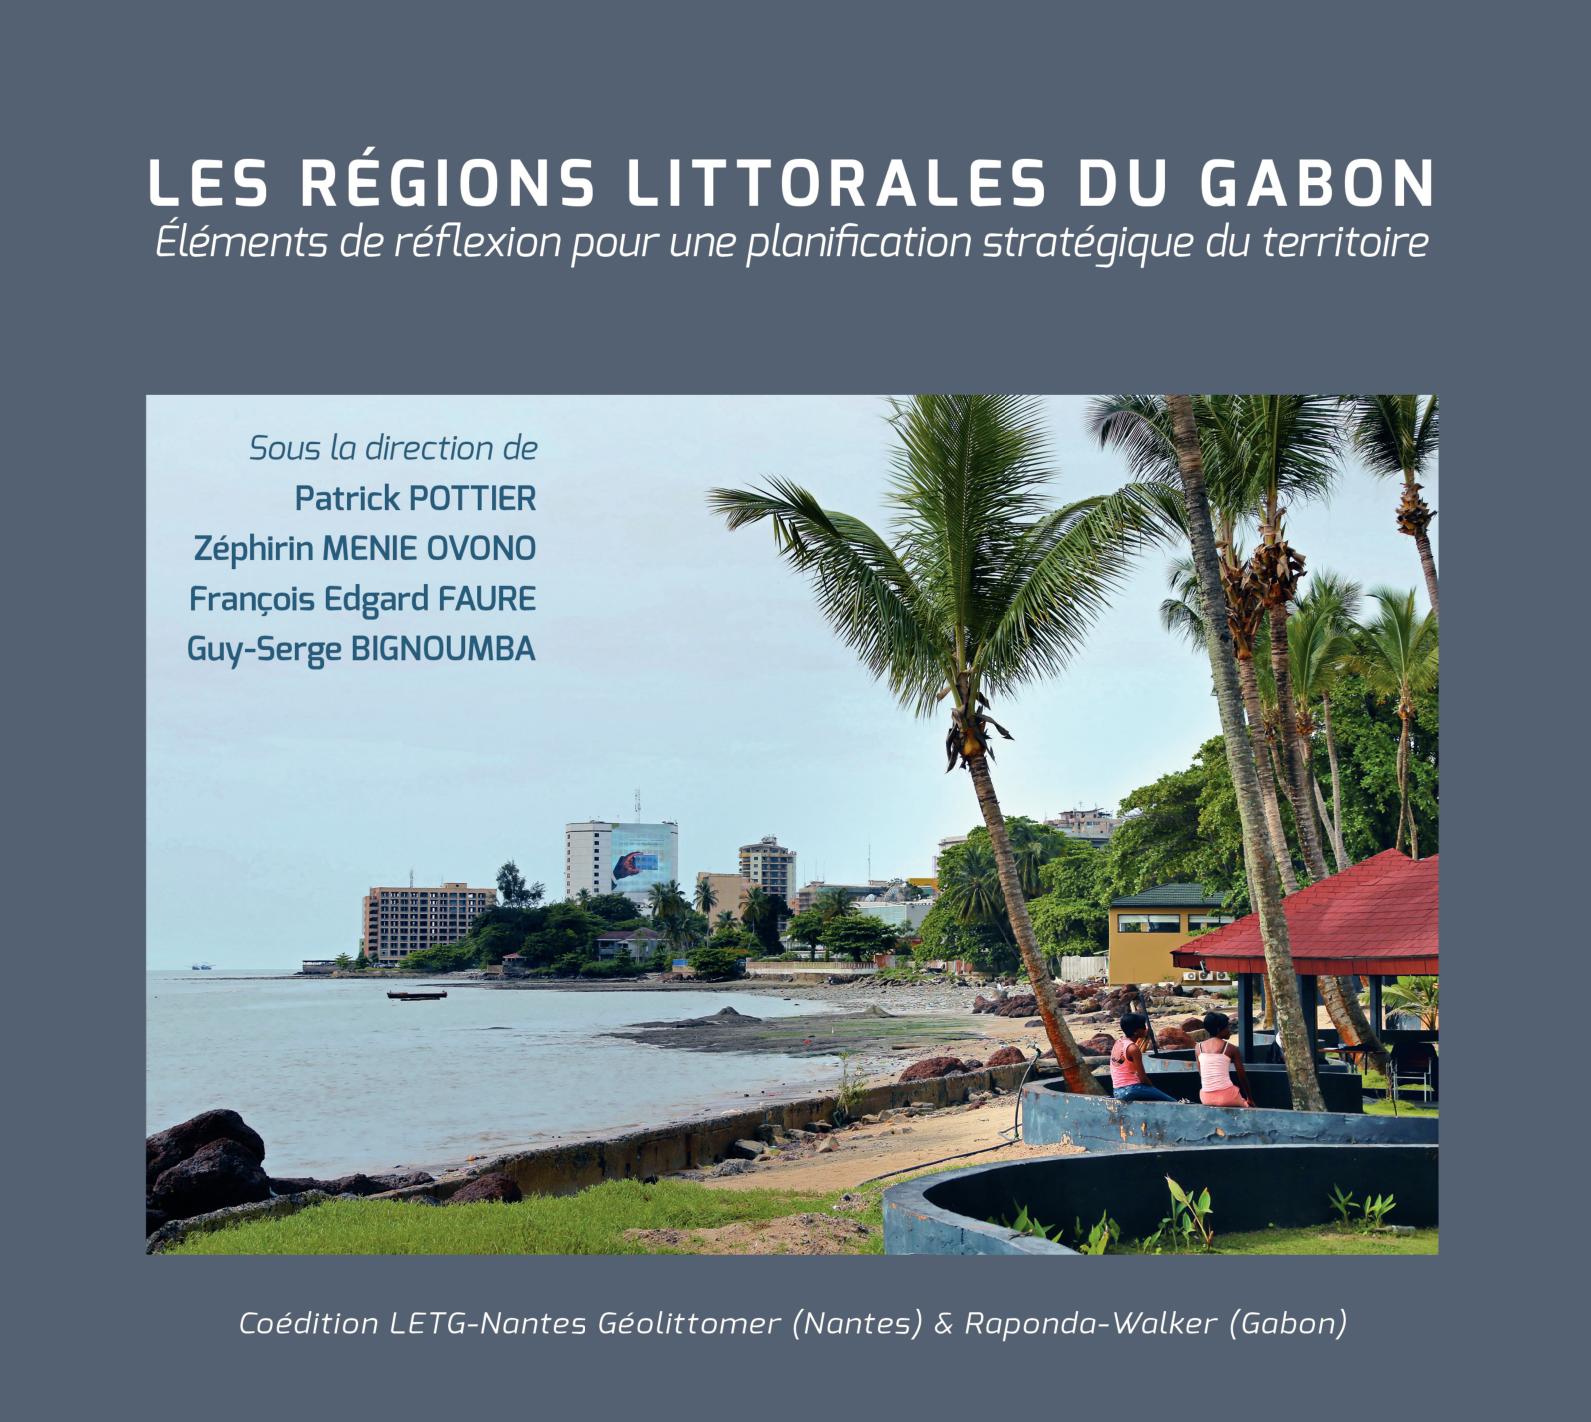 Table De Jardin Mosaïque Carrefour Beau Calaméo Les Regions Littorales Du Gabon